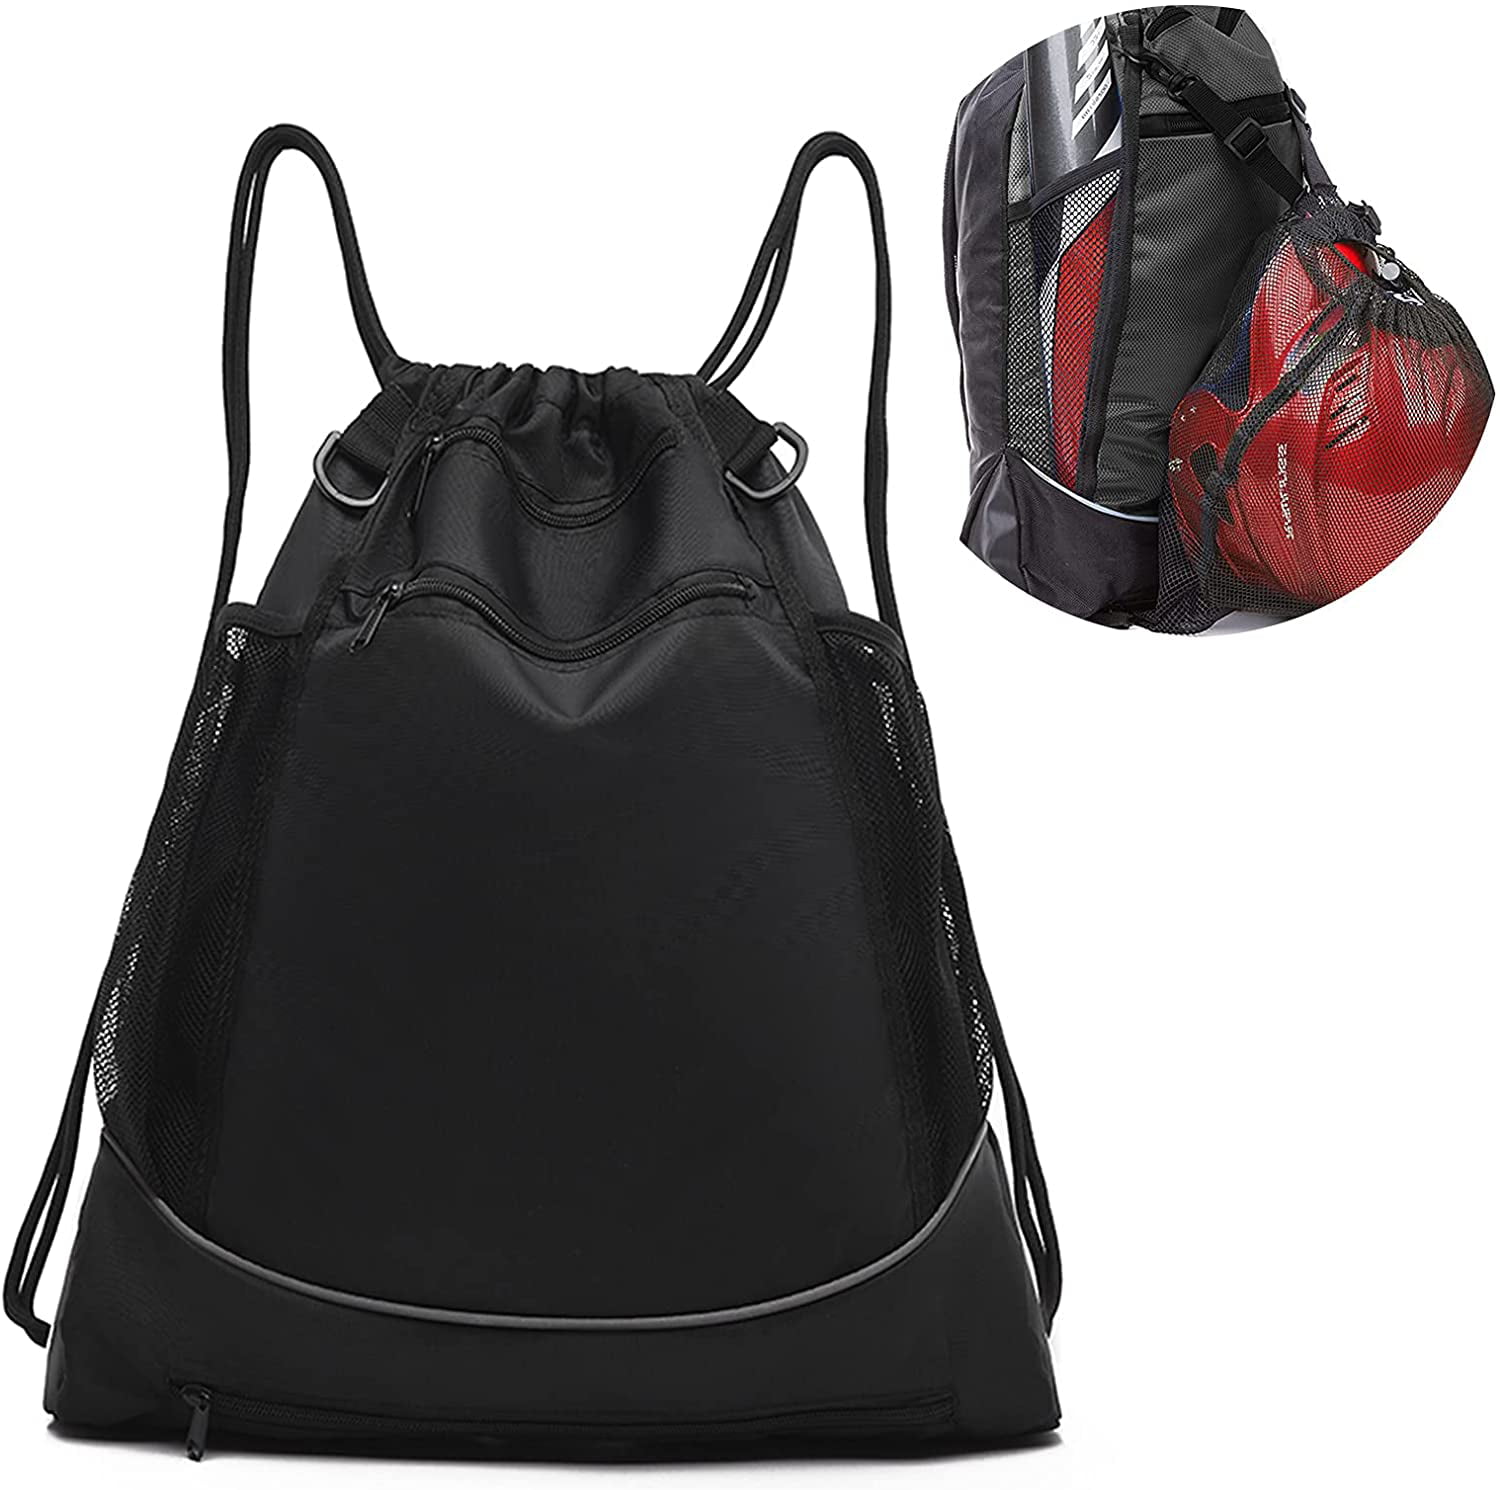 T-Ball & Bat Bag with Detachable Ball Mesh Bag for Helmet Football Basketball Foldable Softball Backpack Gym Bag KAEGREEL Drawstring Baseball Backpack for Boys and Girls 